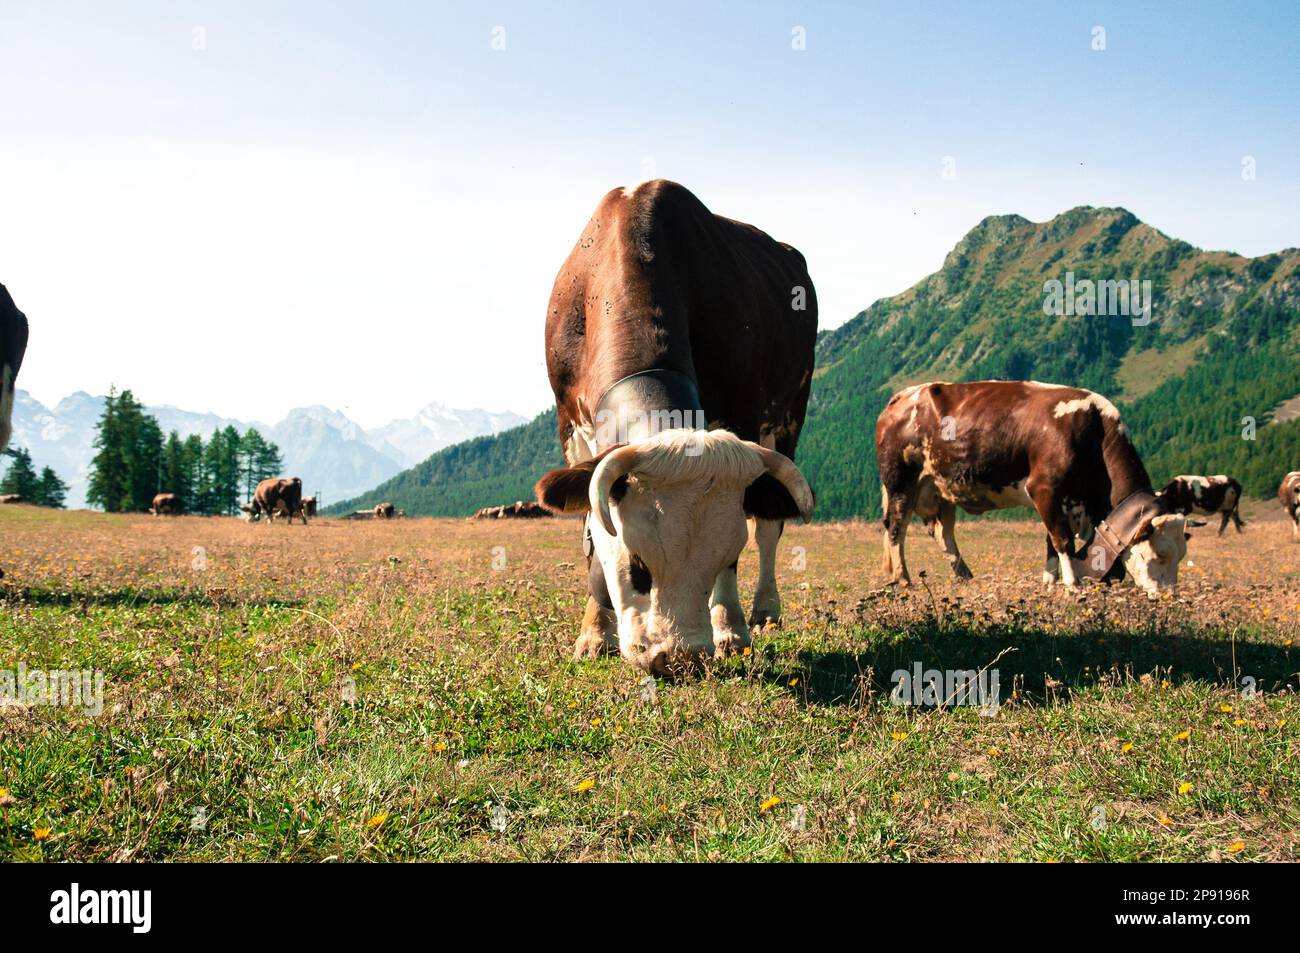 Italia: Torgon Valle d'Aosta. Foto delle mucche nel pascolo estivo in Alpe Gorza. Andrea Pinna/Alamy Foto Stock